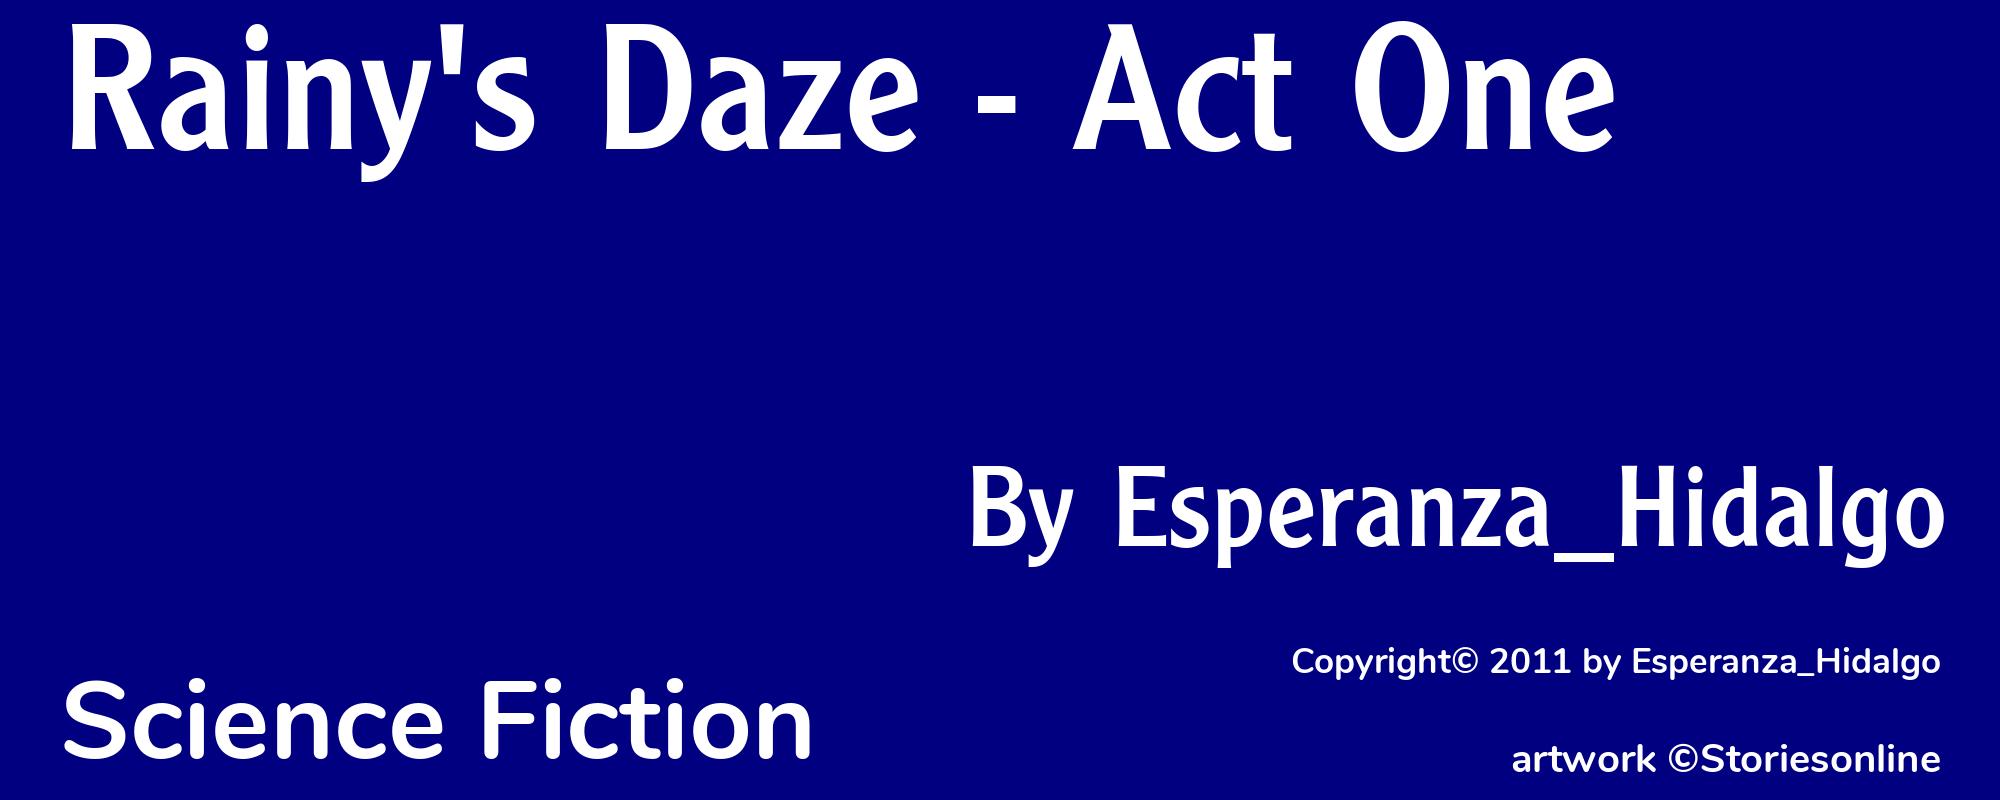 Rainy's Daze - Act One - Cover